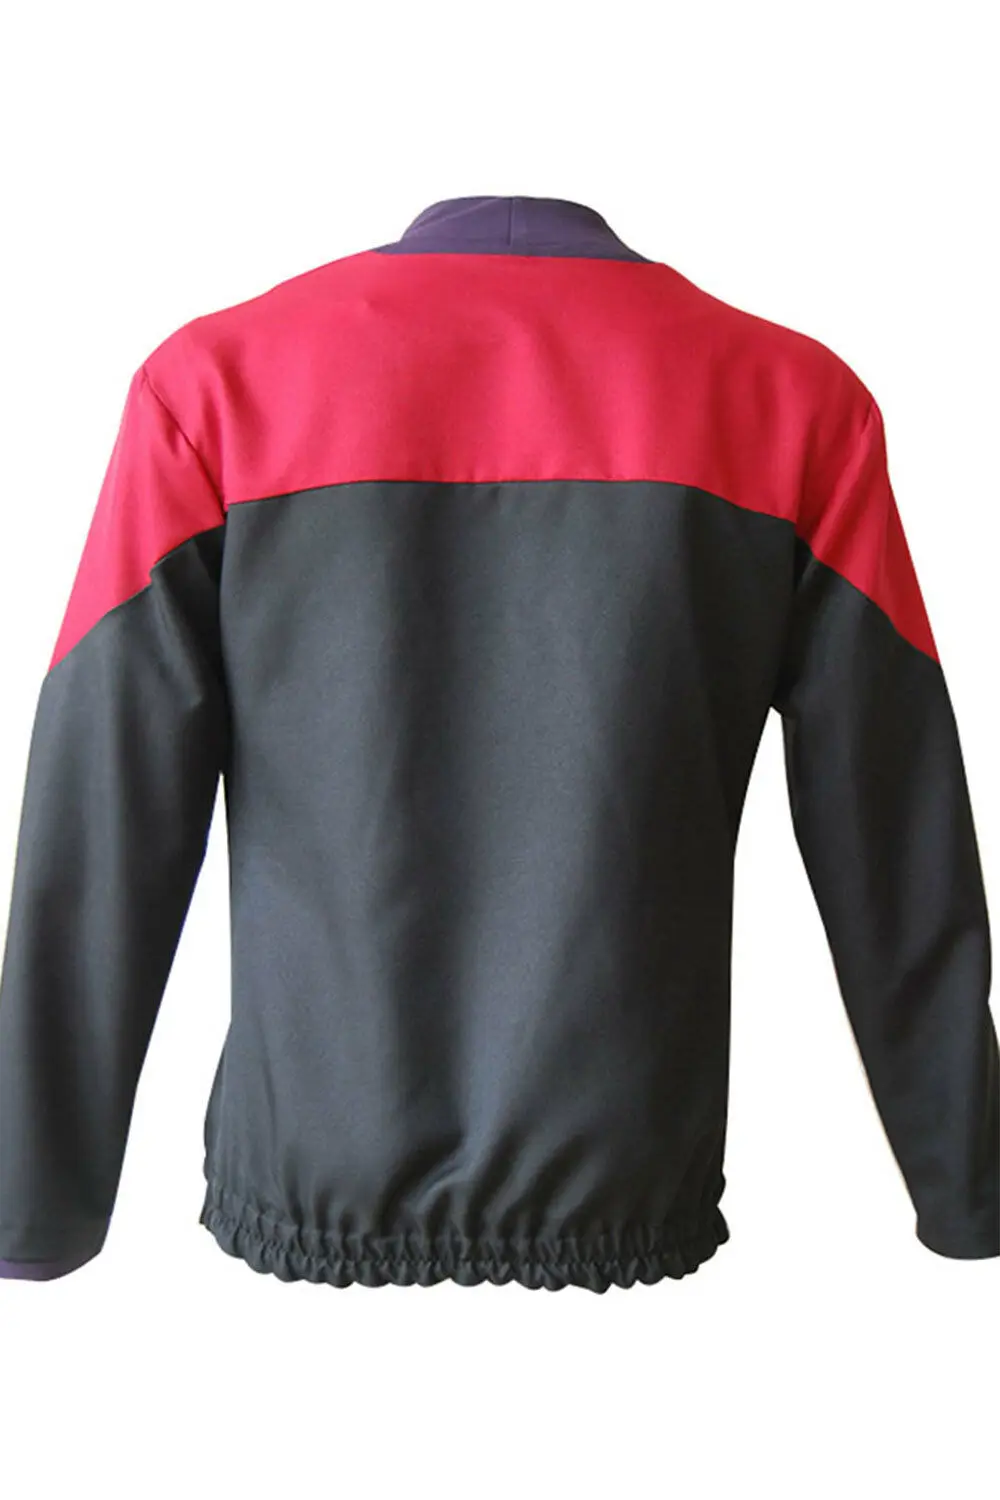 Звездный карнавальный костюм Trek Voyager, костюм капитана Красной формы, рубашка, куртка, костюм, нагрудный знак, костюм на Хэллоуин